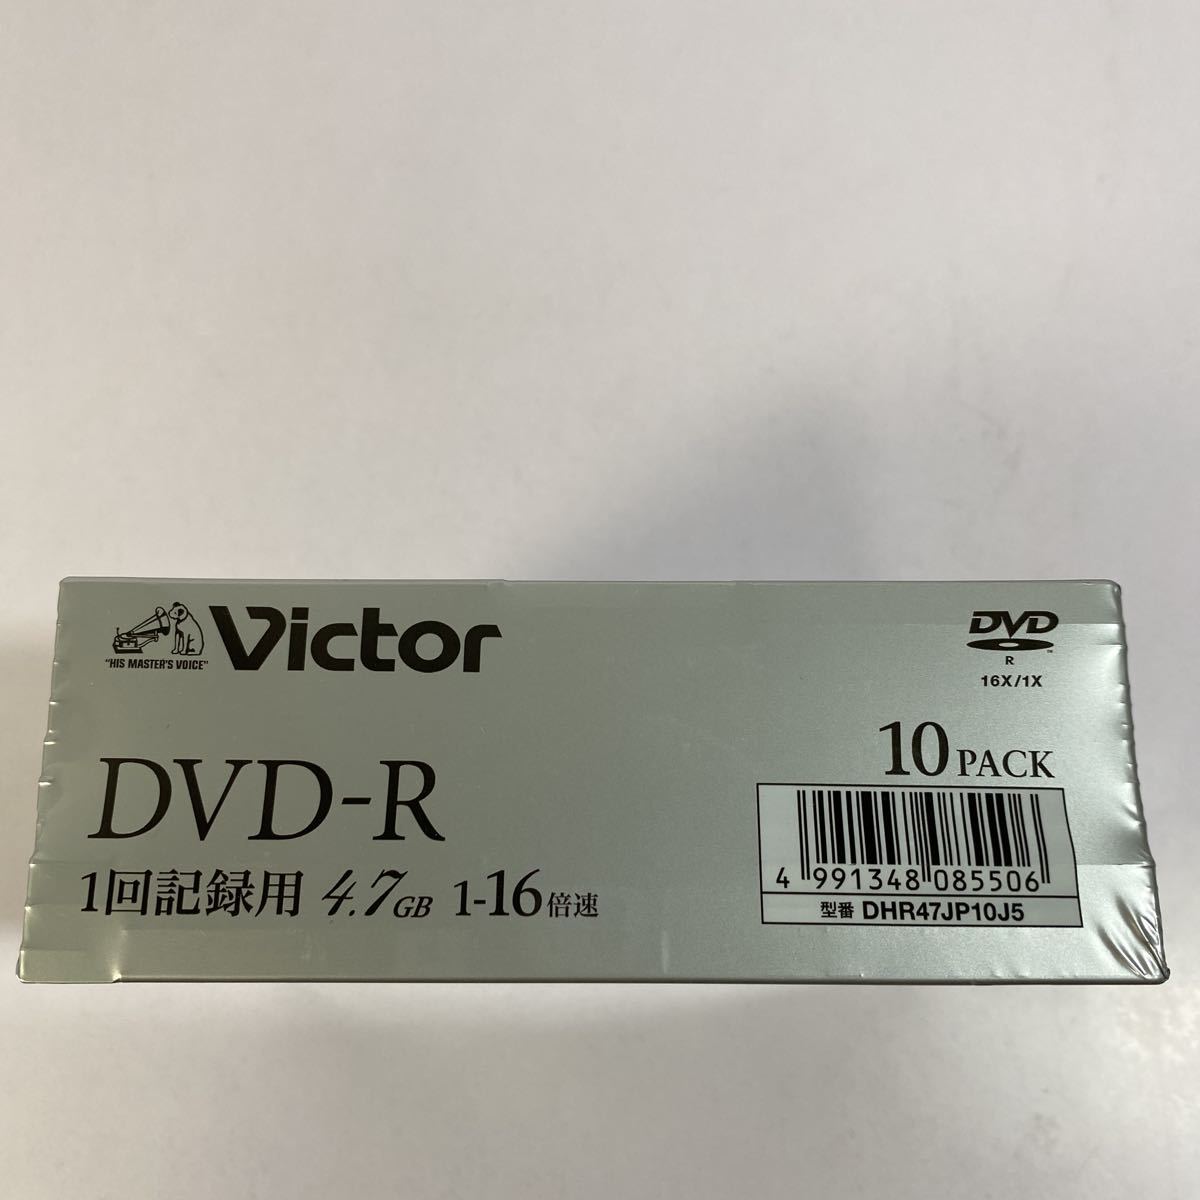 7【送料無料】Victor DVD-RAM 録画用DVD 10PACK 4.7GB 新品未使用品_画像2